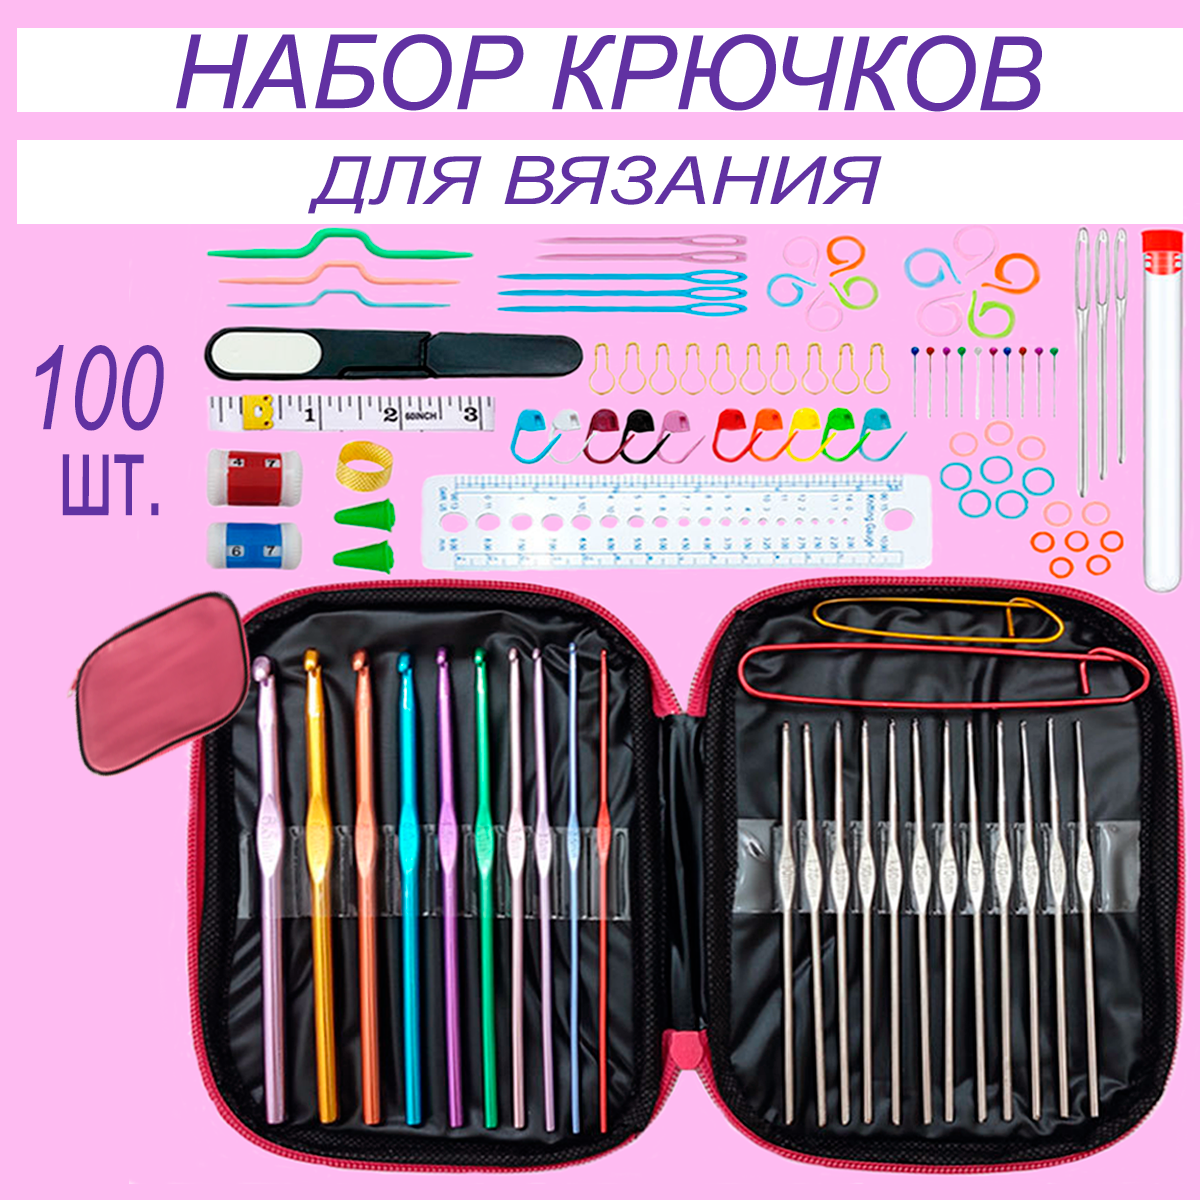 Набор крючков для вязания в розовом чехле, 100 предметов